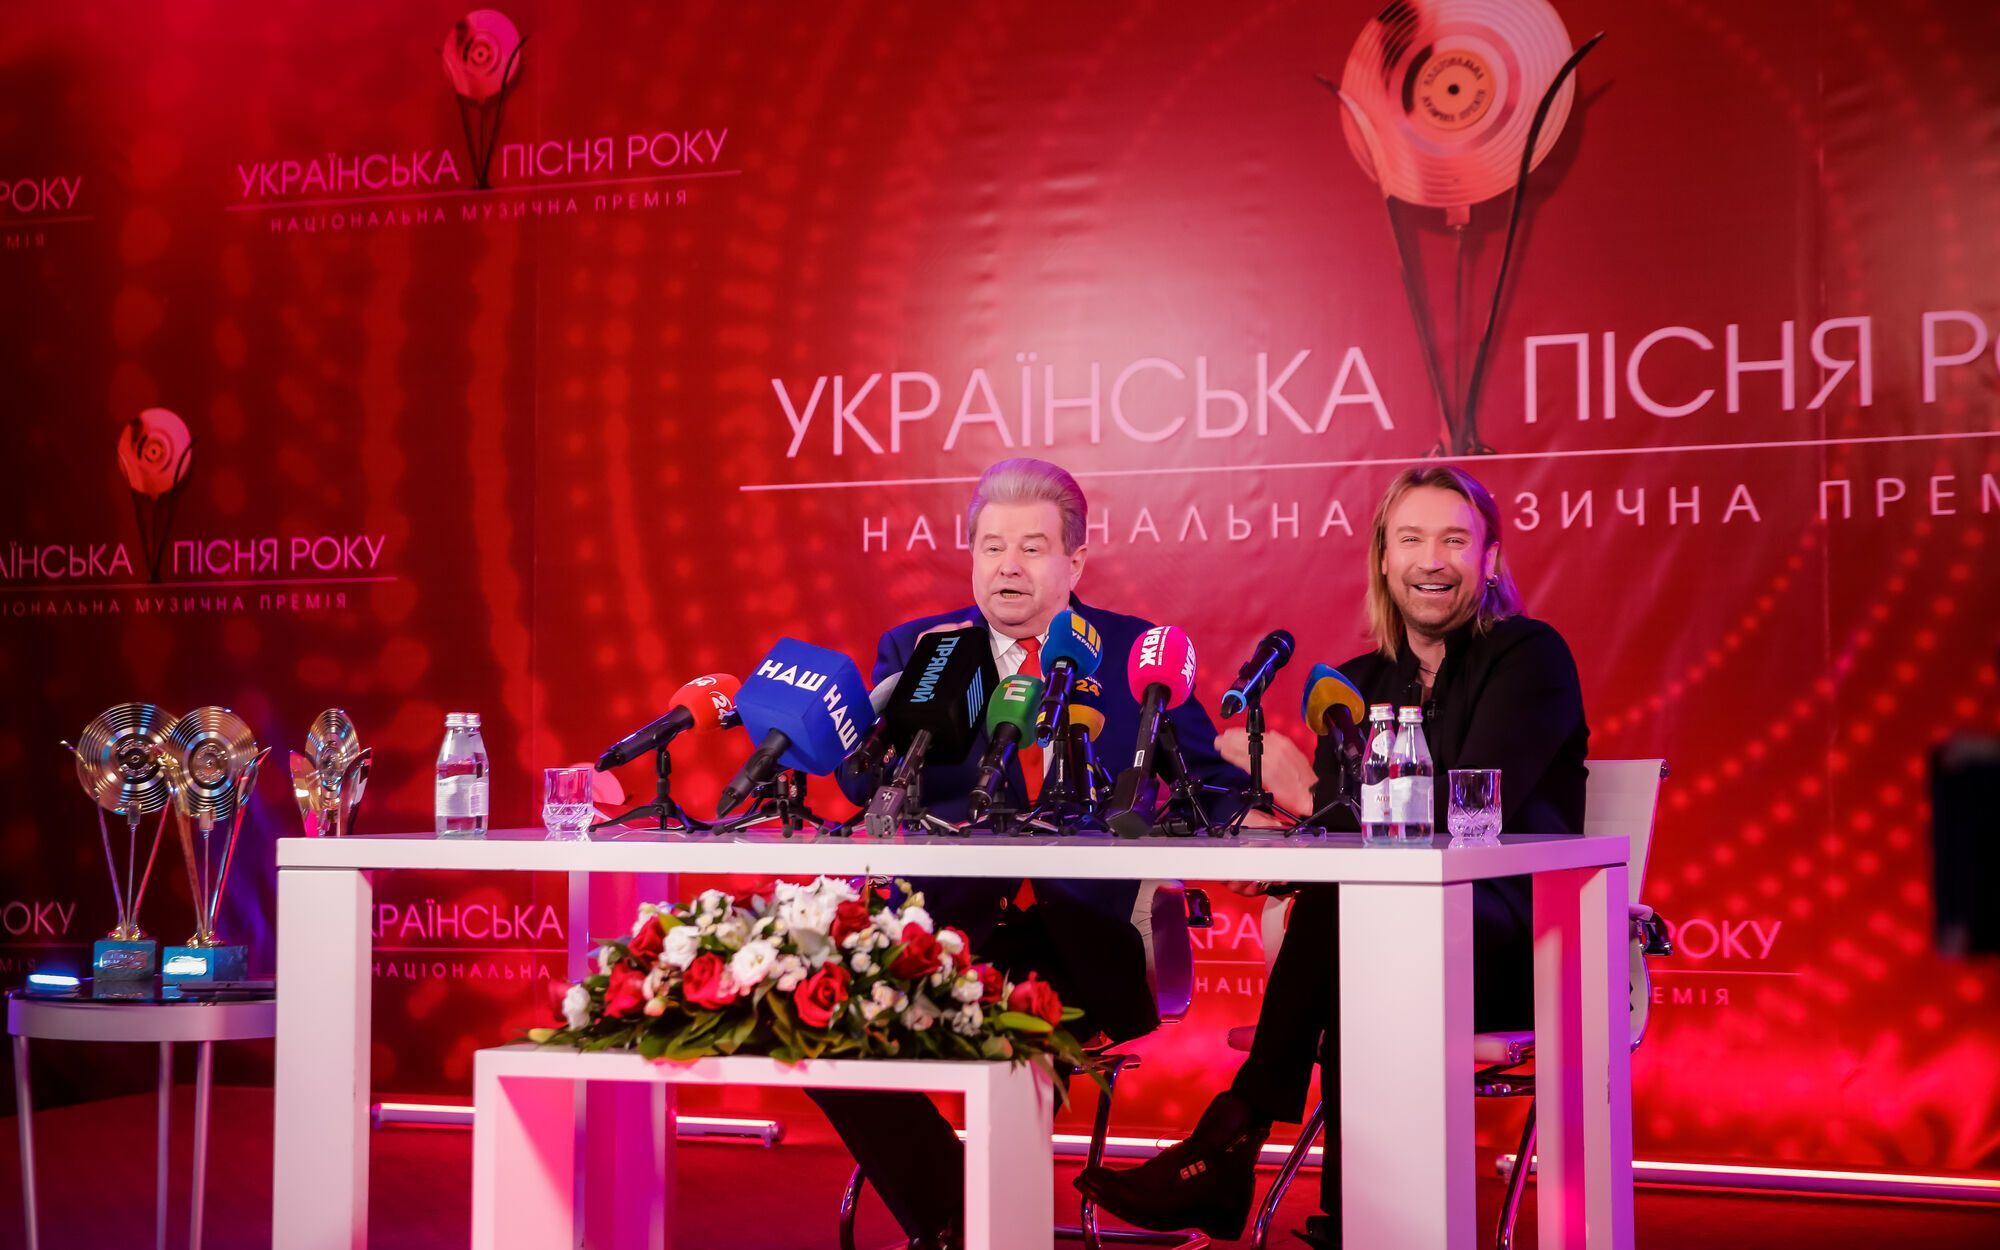 Винник и Поплавский анонсировали музыкальную премию "Украинская песня года 2020"